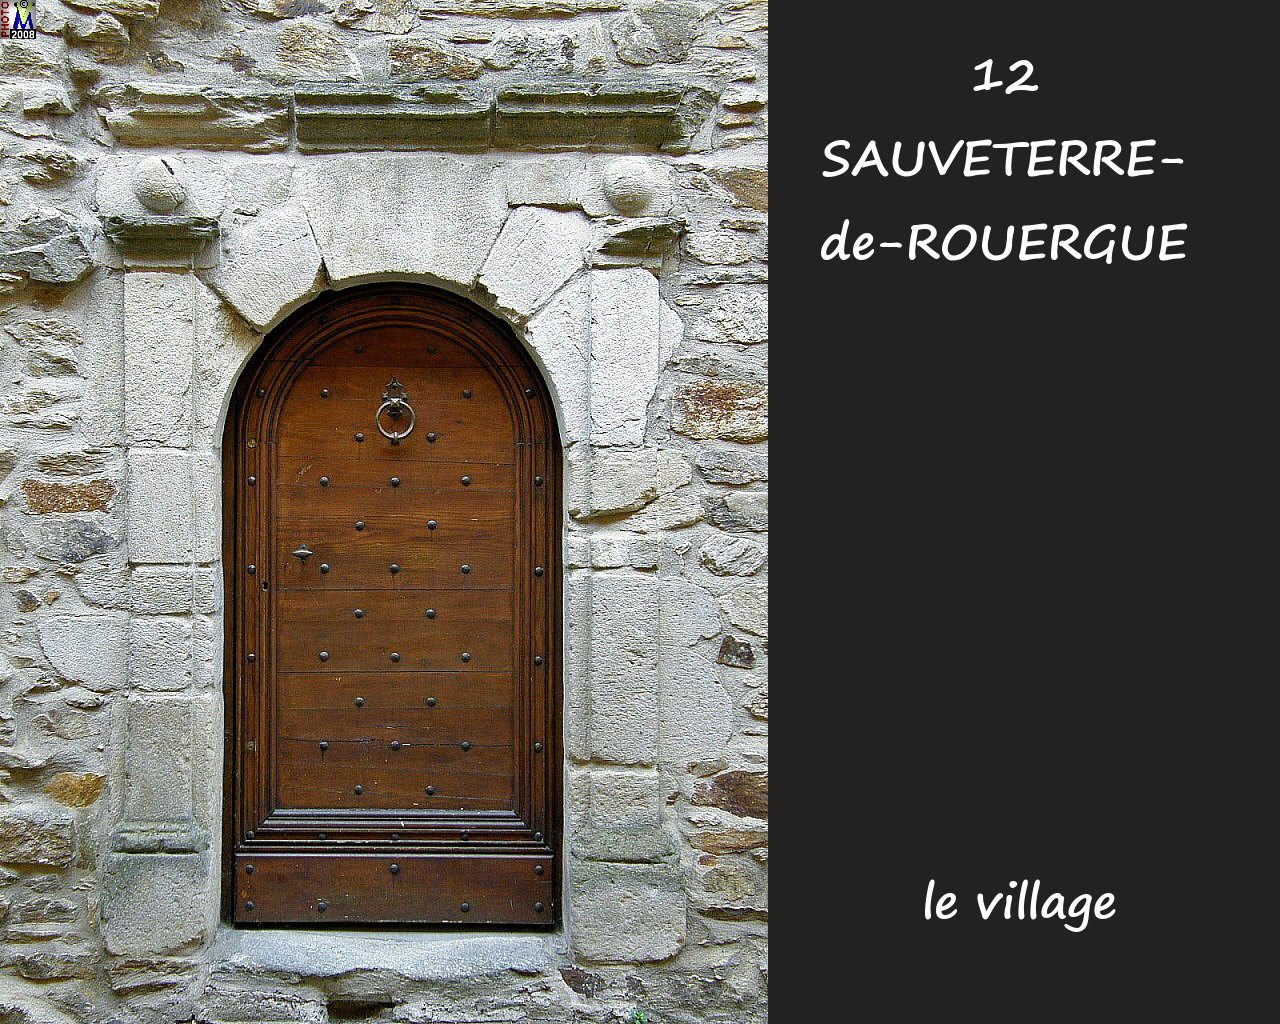 12SAUVETERRE-ROUERGUE_village_184.jpg